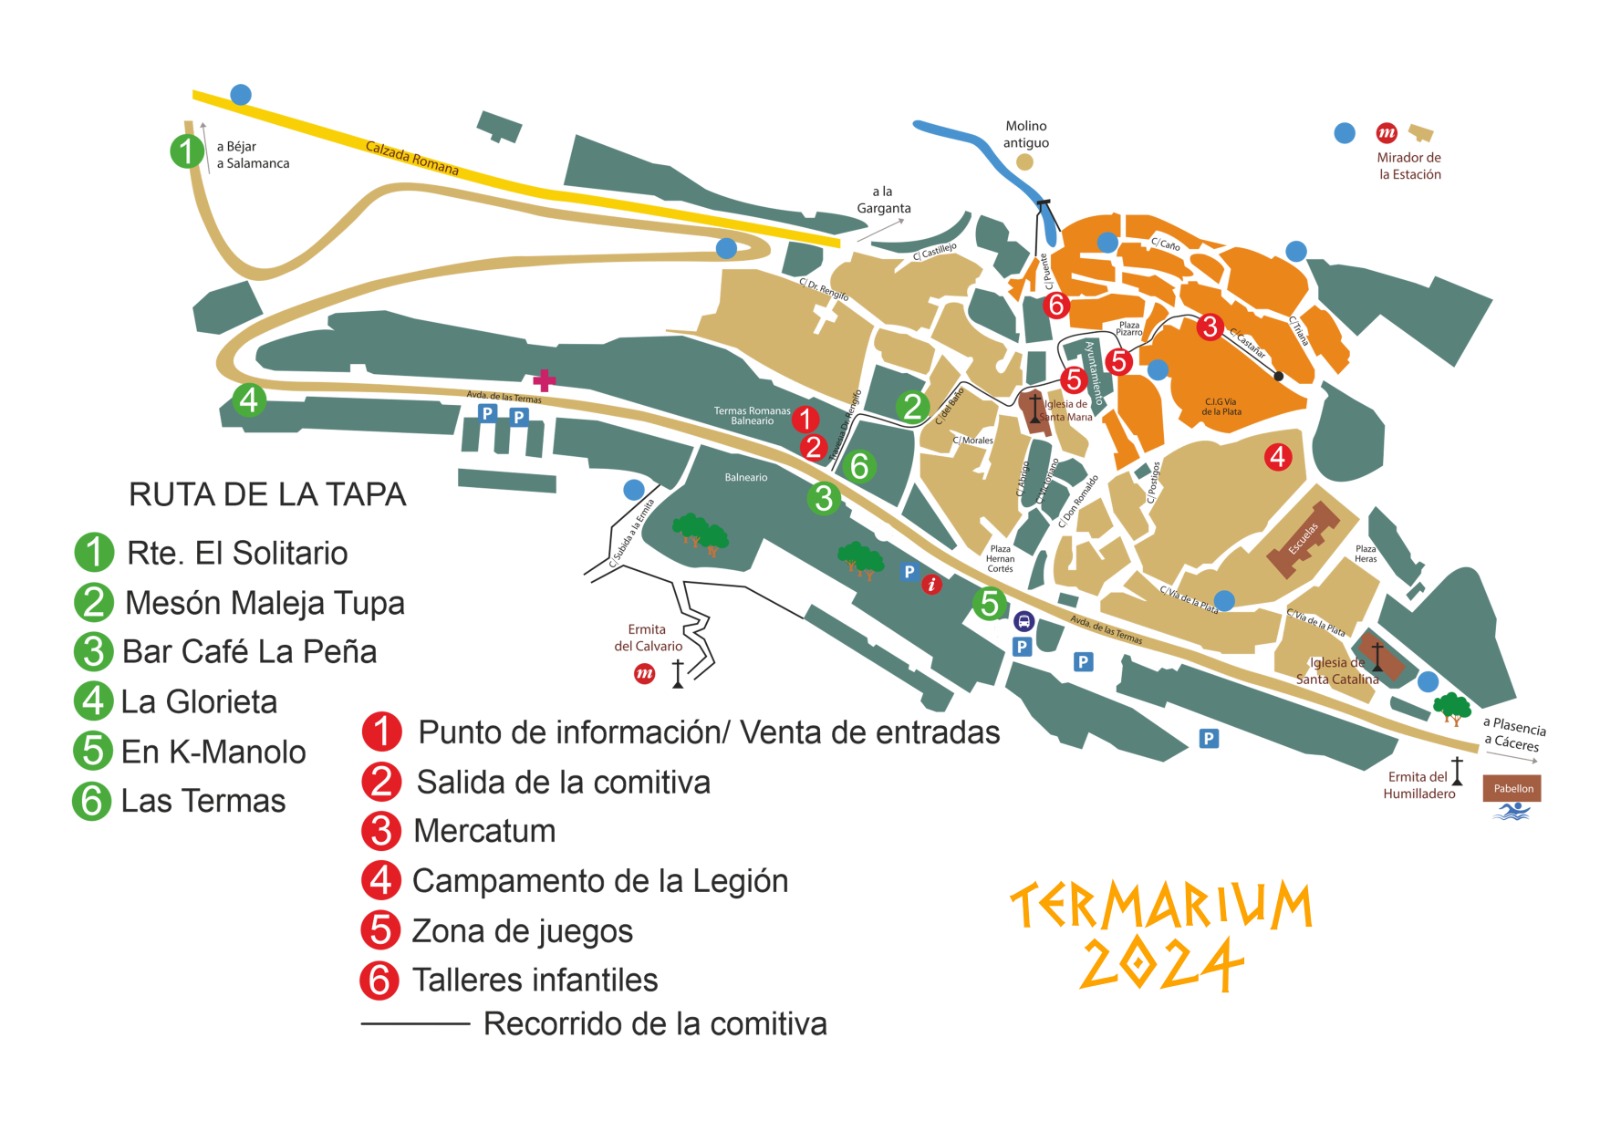 Mapa de Interés de Termarium en Baños de Montemayor